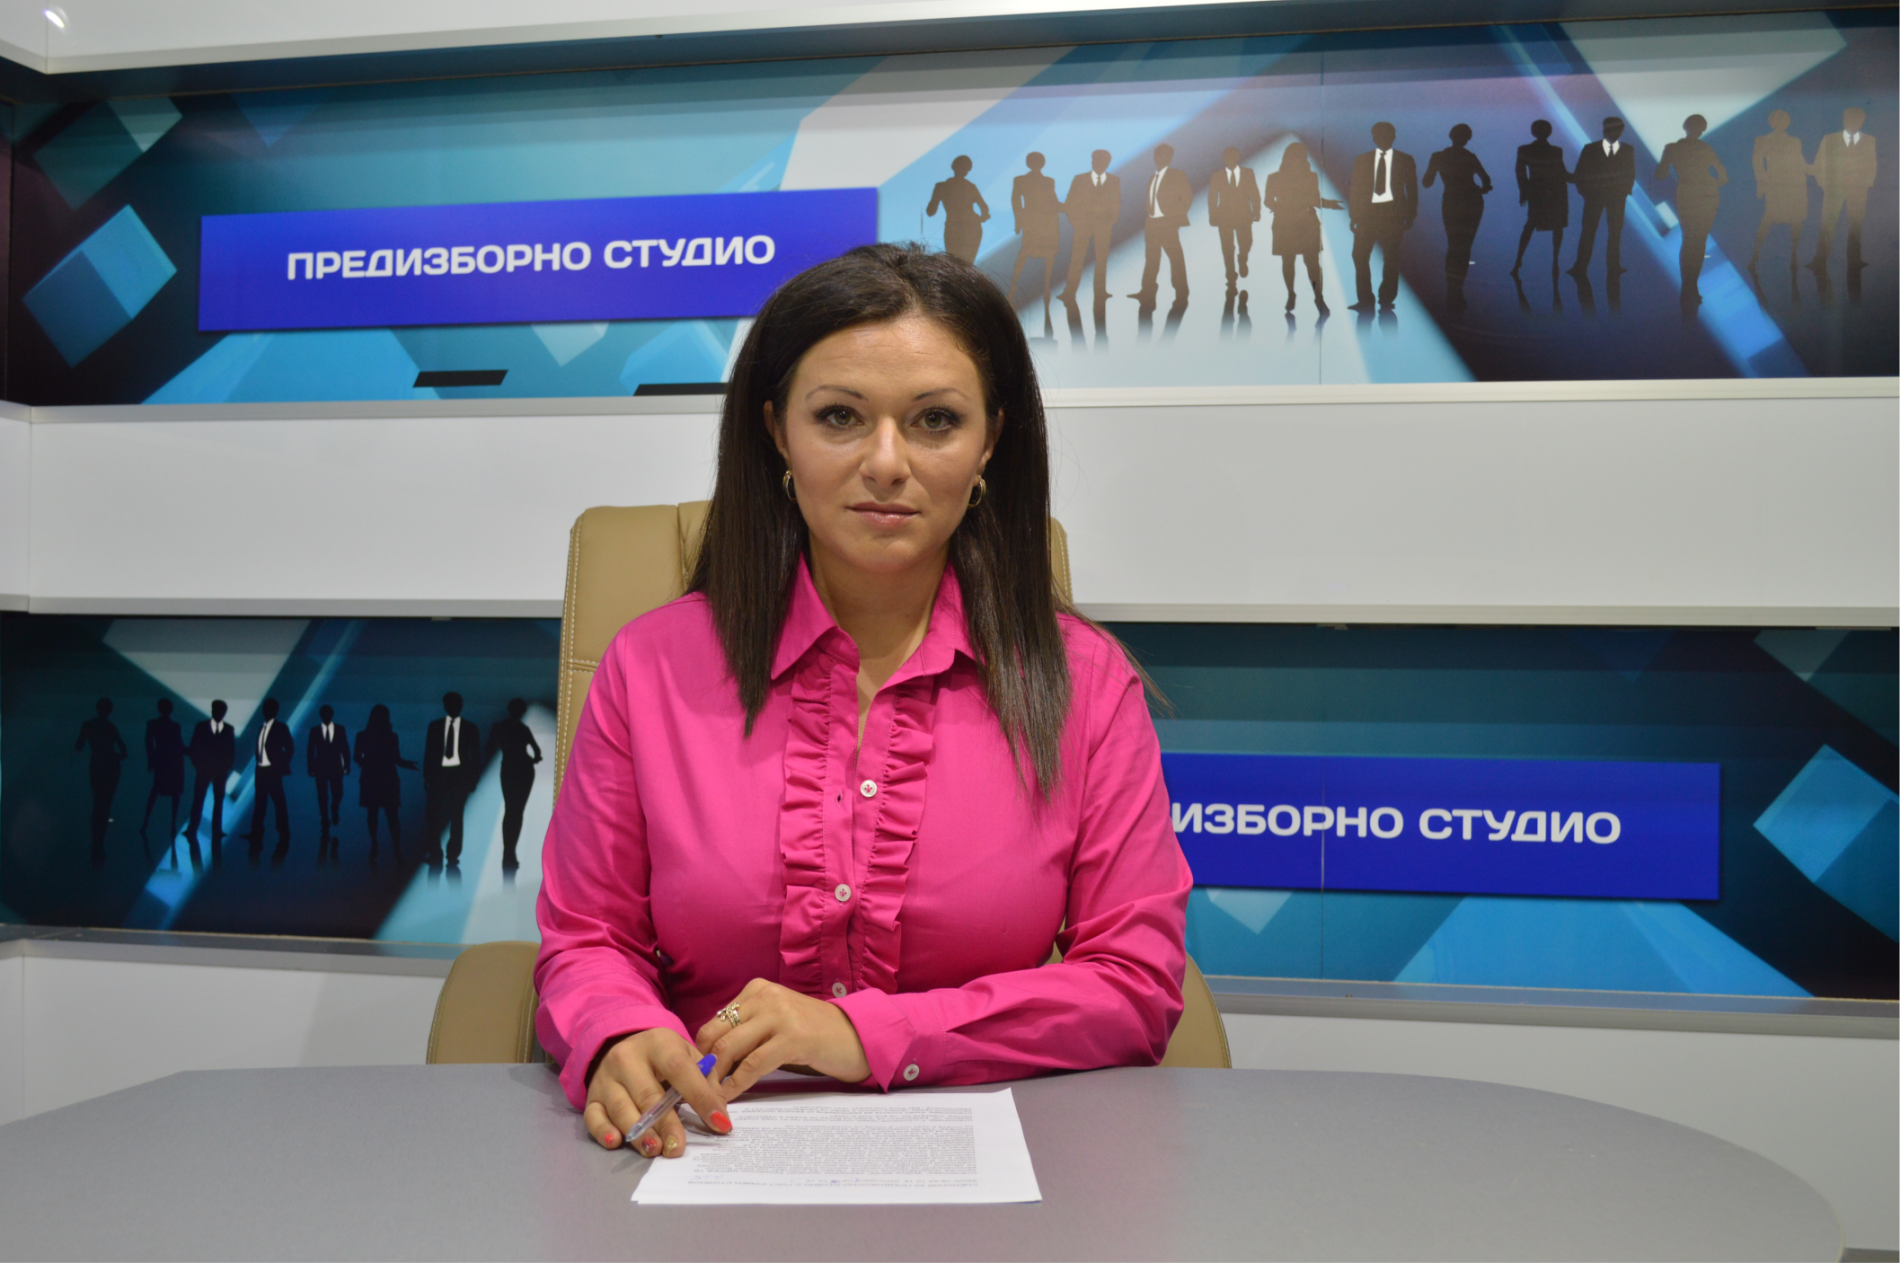 ЩЕРЕВ ТВ започва предизборни студиа от понеделник